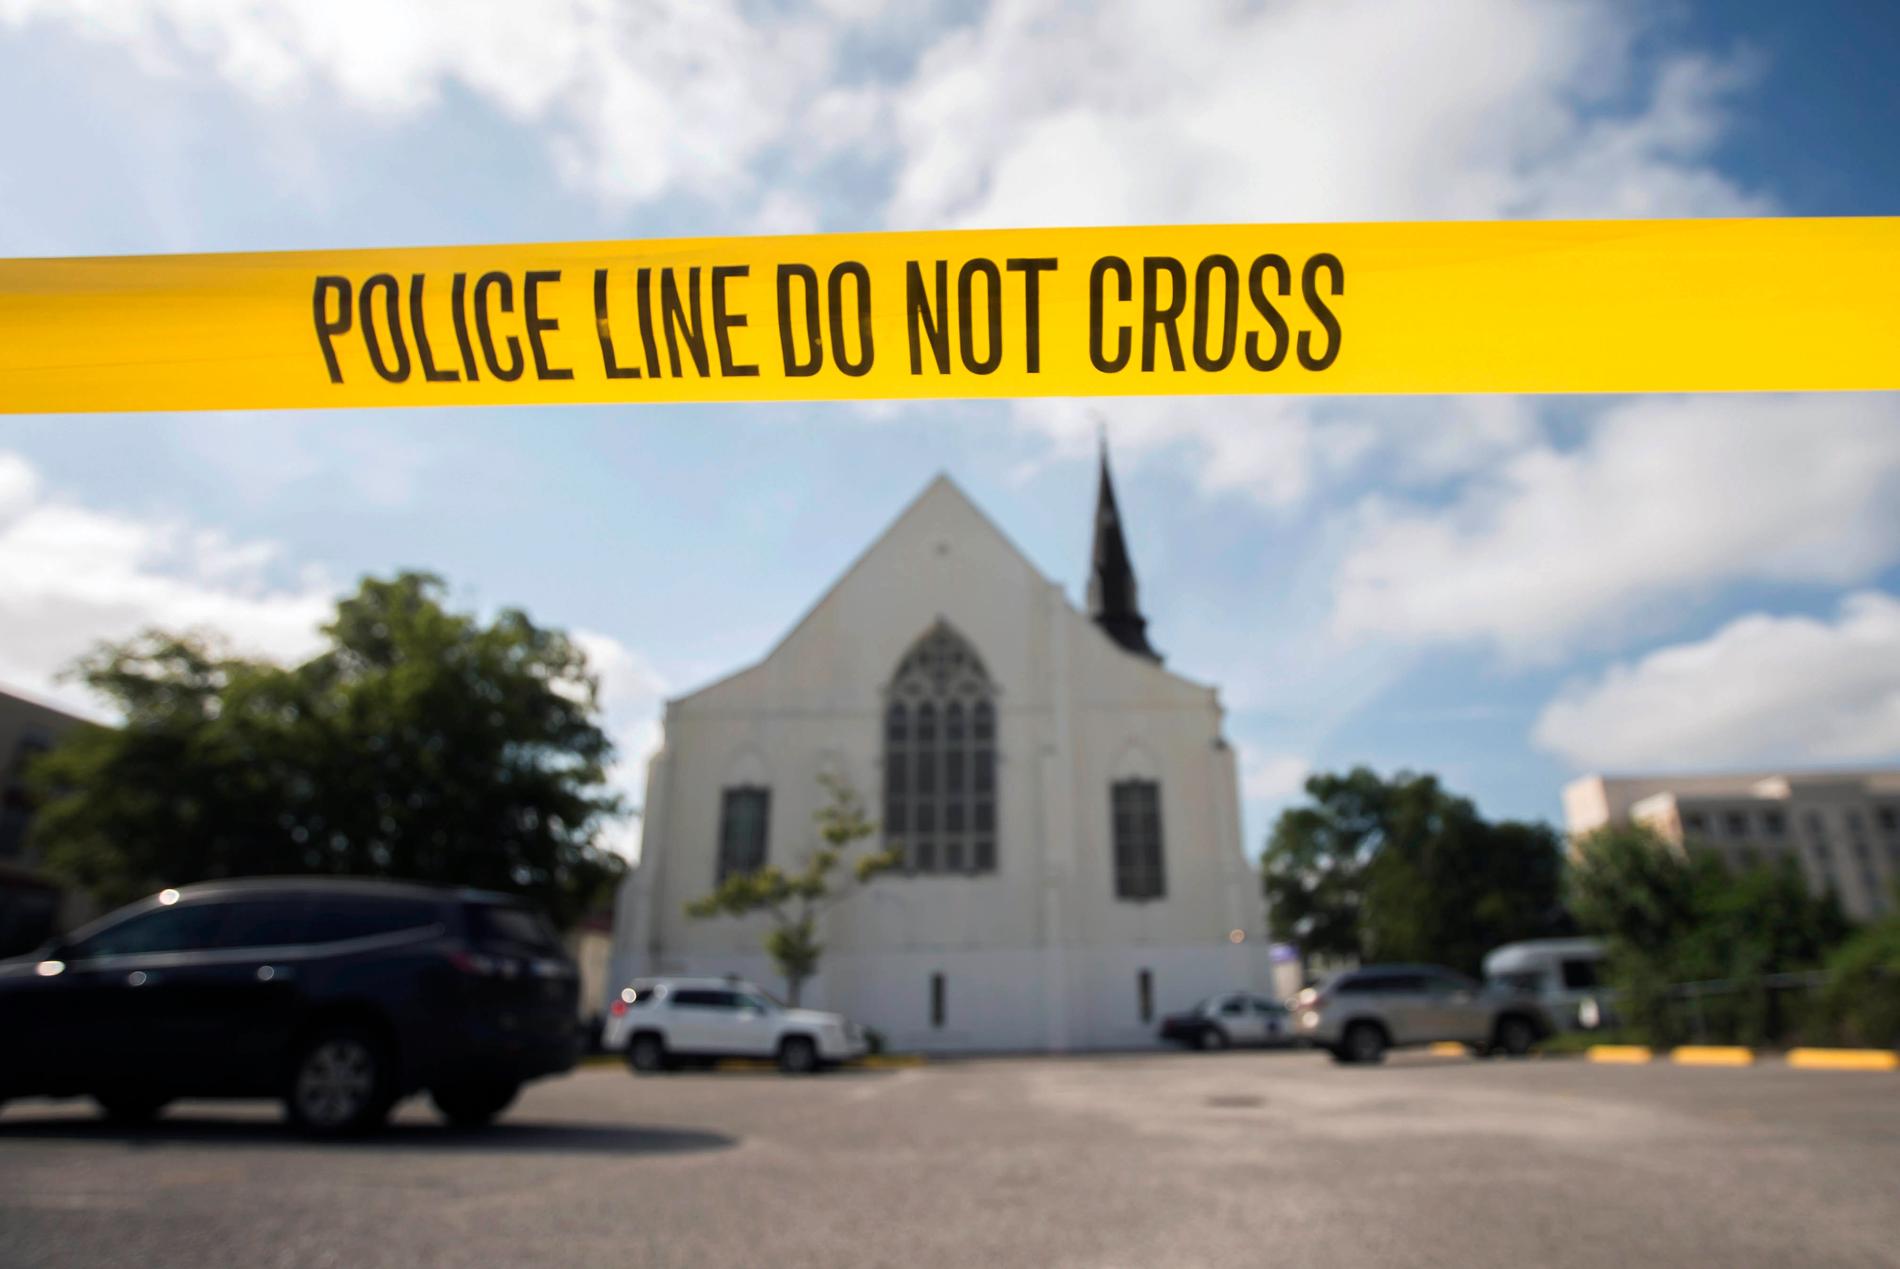 Fredag den 19 juni 2015 gick Dylann Roof in i Emanuel Church i Charleston och sköt ihjäl nio personer.